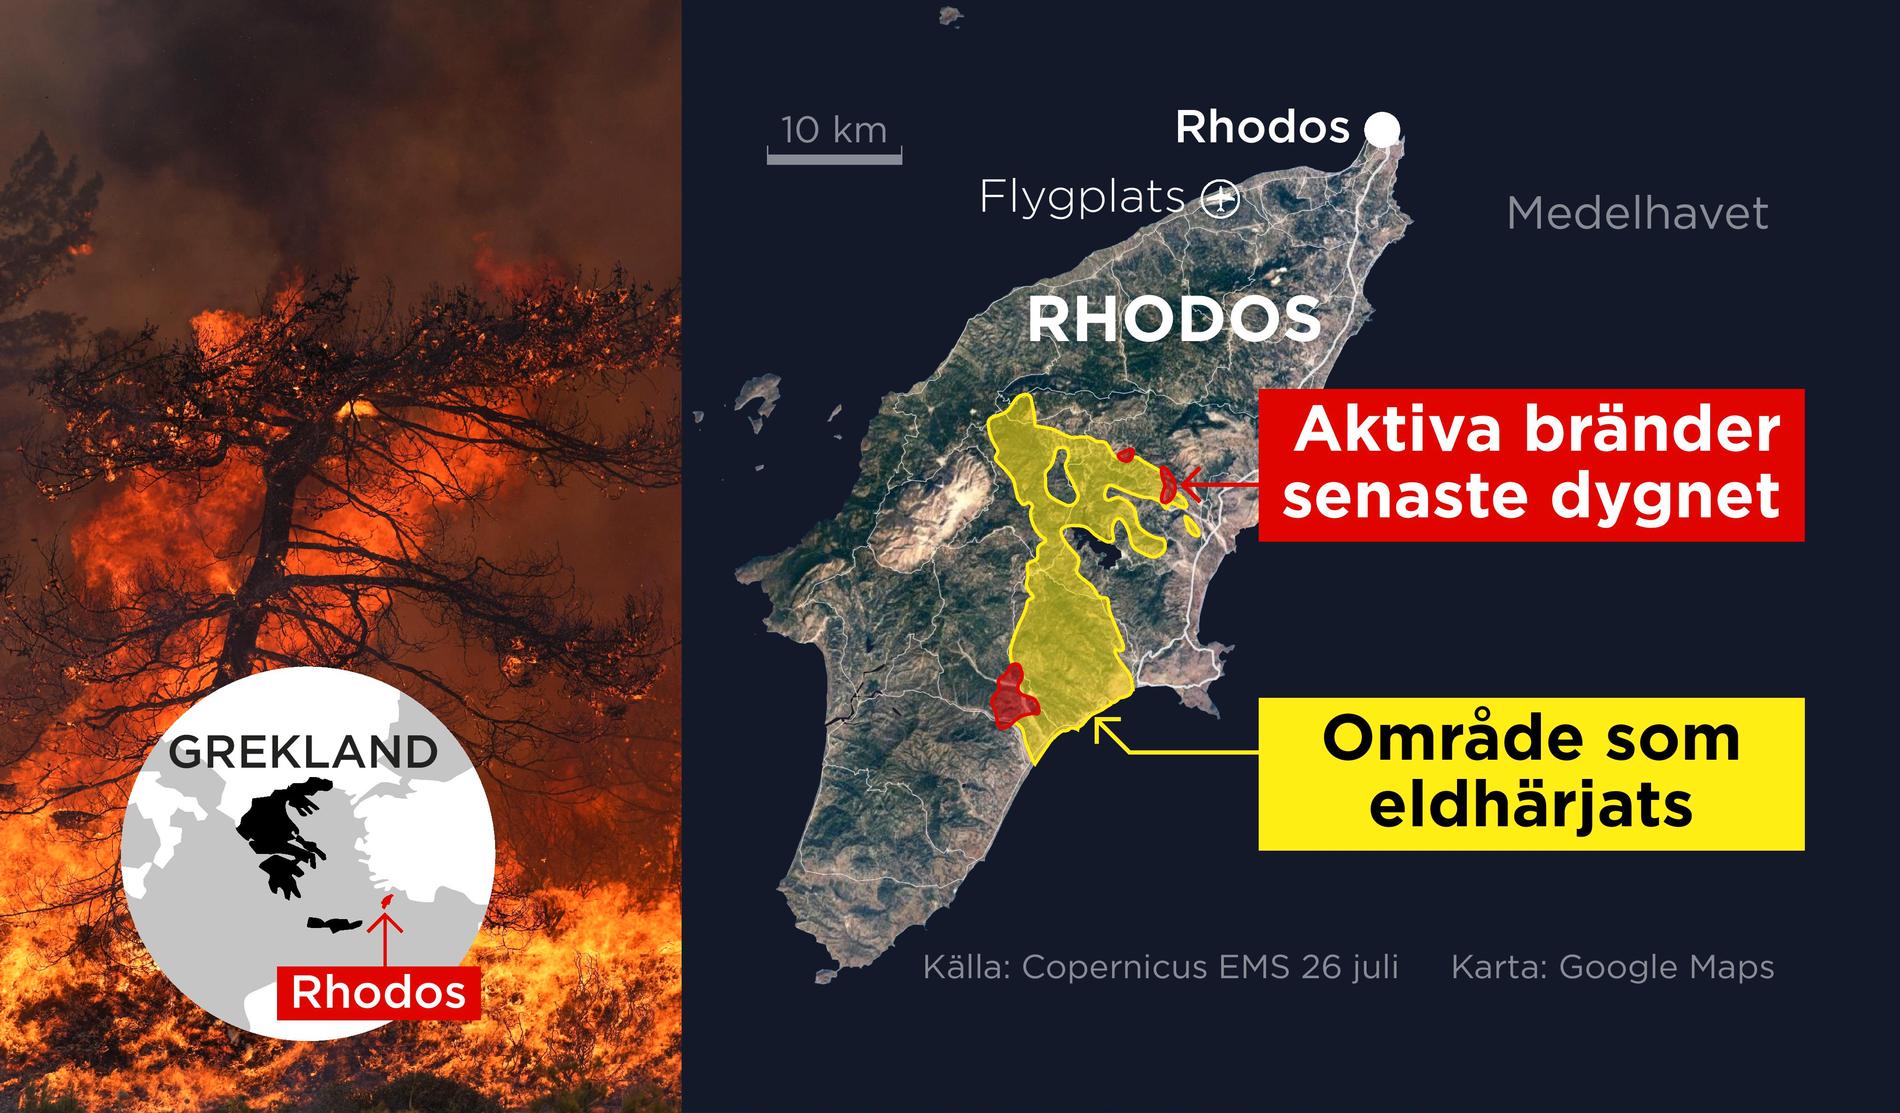 Kartan visar aktiva bränder på den grekiska ön Rhodos det senaste dygnet samt eldhärjade områden.